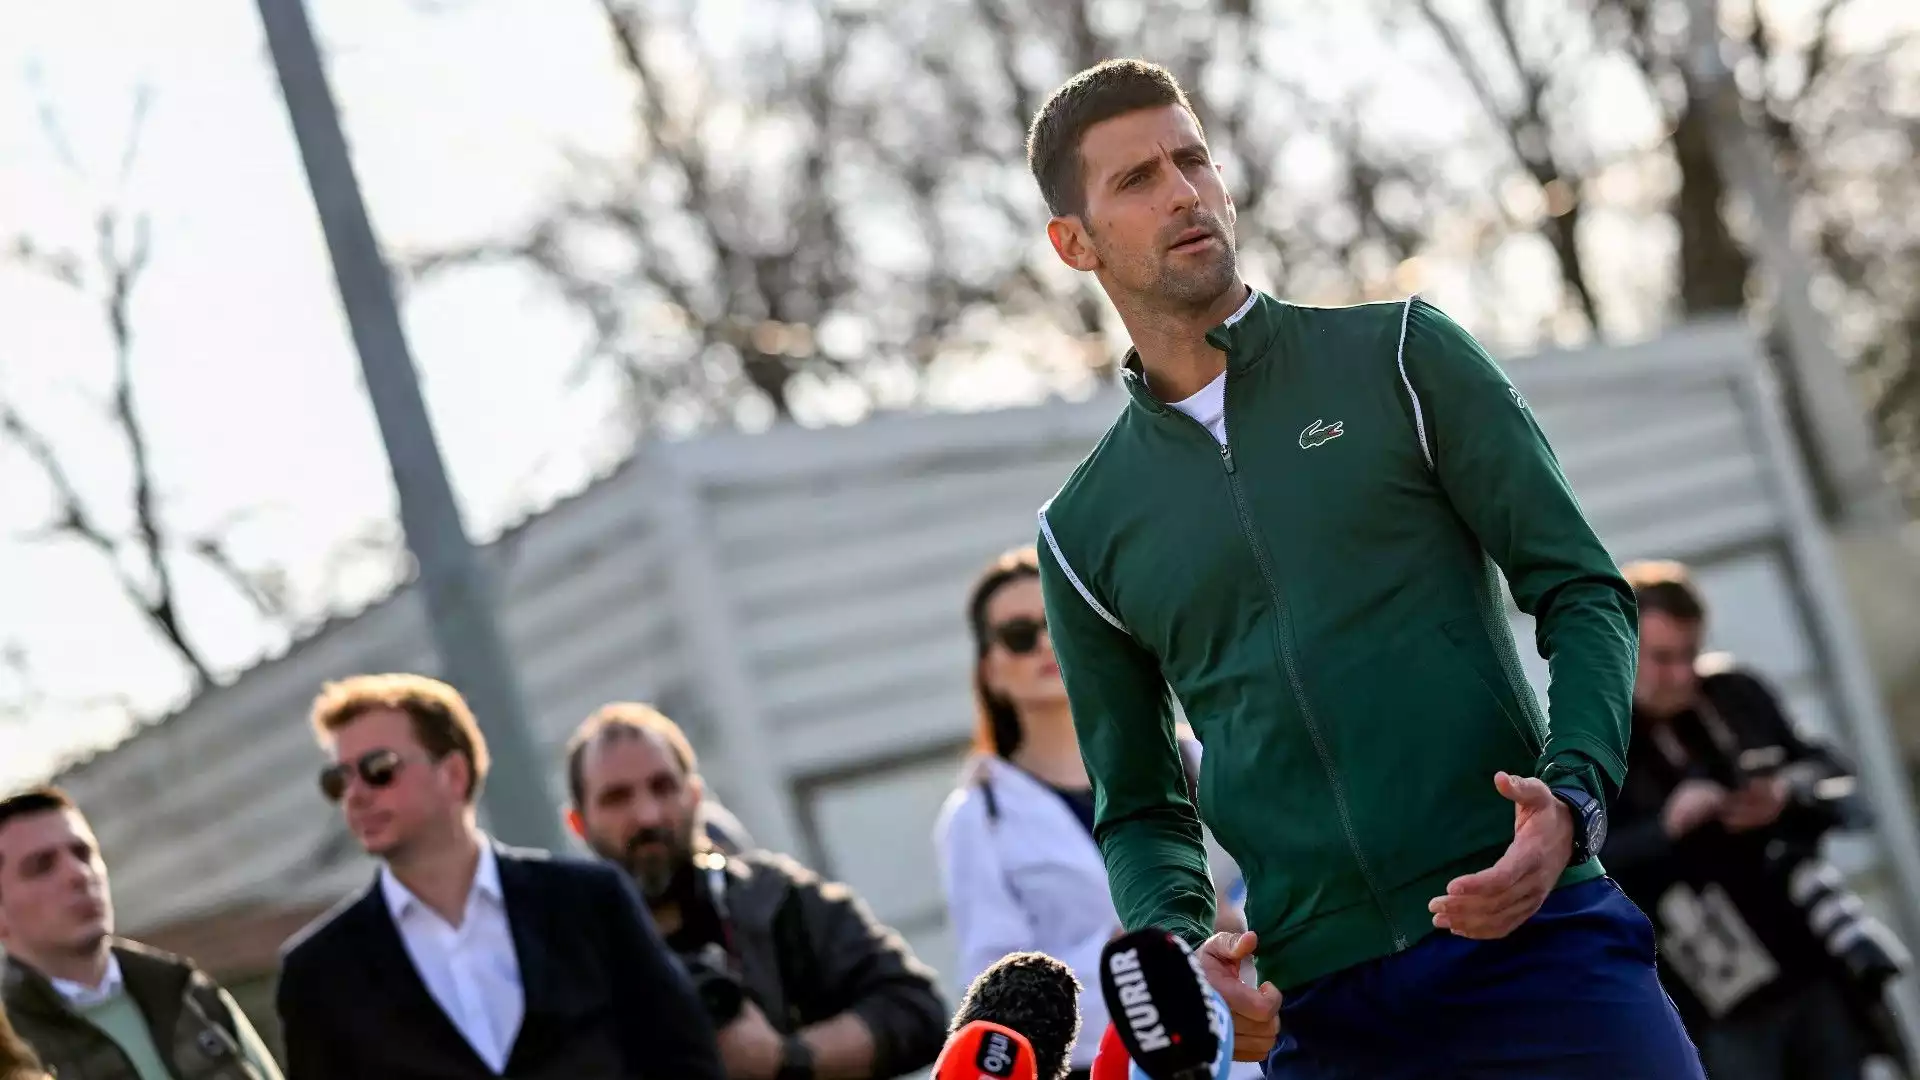 A Belgrado (e non solo), Djokovic è amatissimo